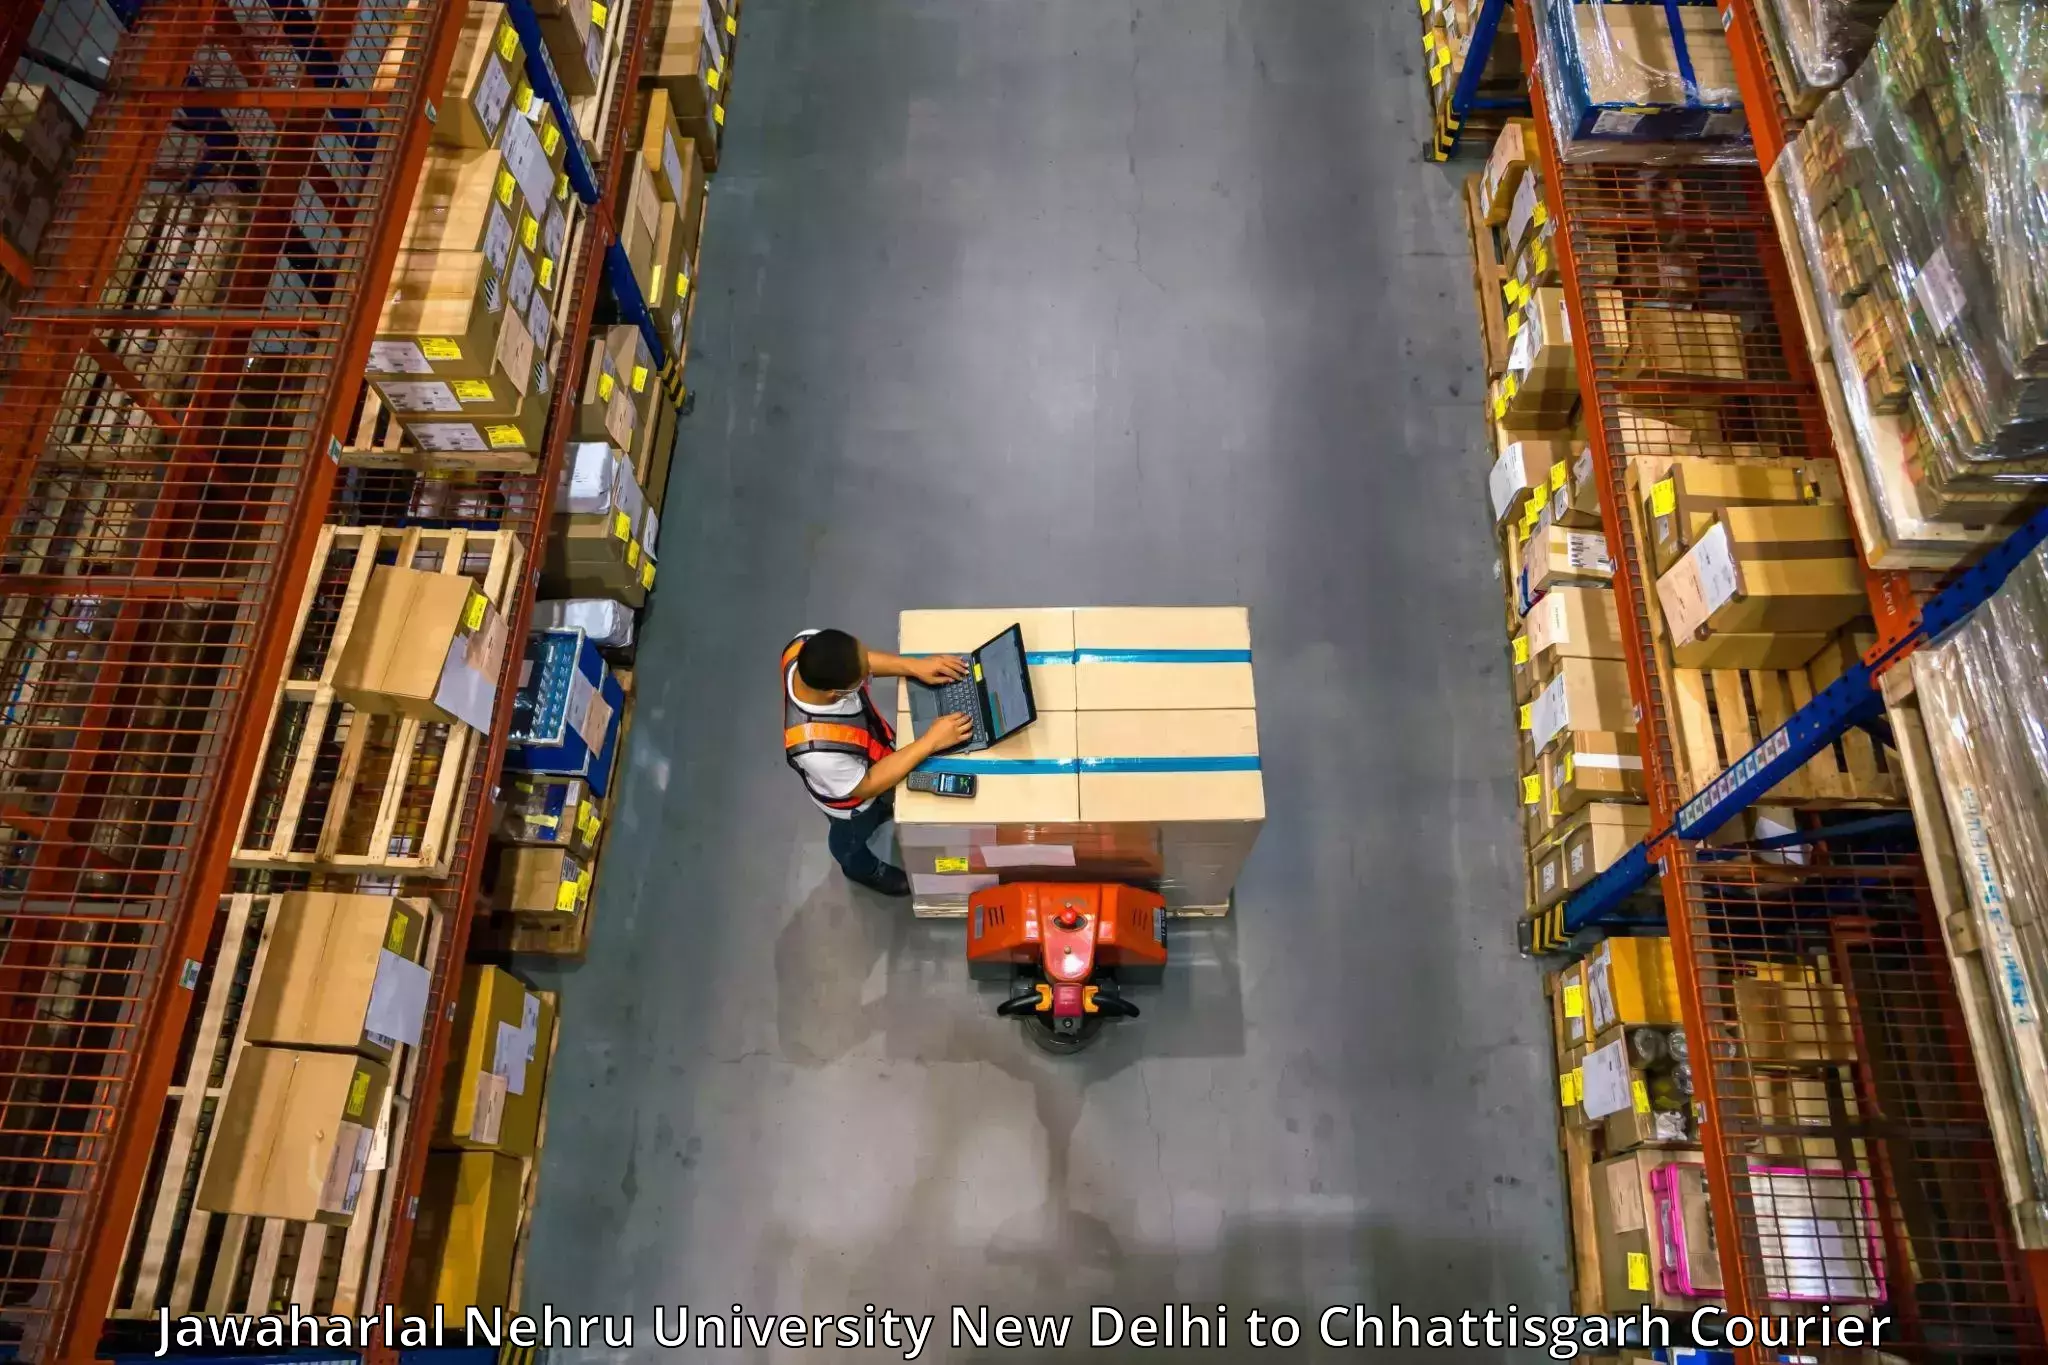 Furniture moving experts Jawaharlal Nehru University New Delhi to Amakhokhara